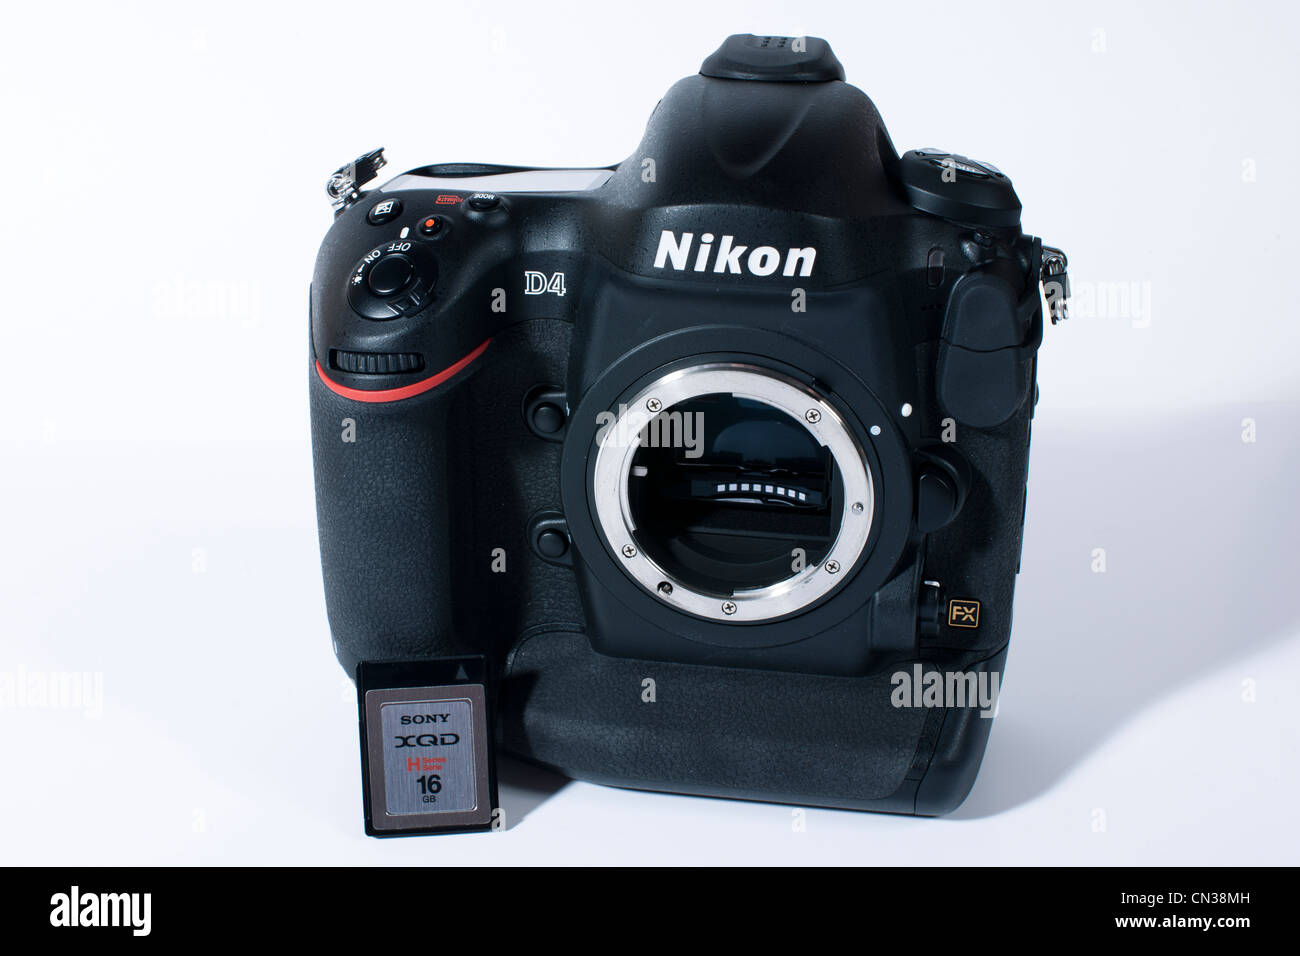 Phare de Nikon appareil photo reflex numérique professionnel le D4. Vu ici sur fond blanc avec la nouvelle carte XQD Sony uniquement utilisée dans le D4. Banque D'Images